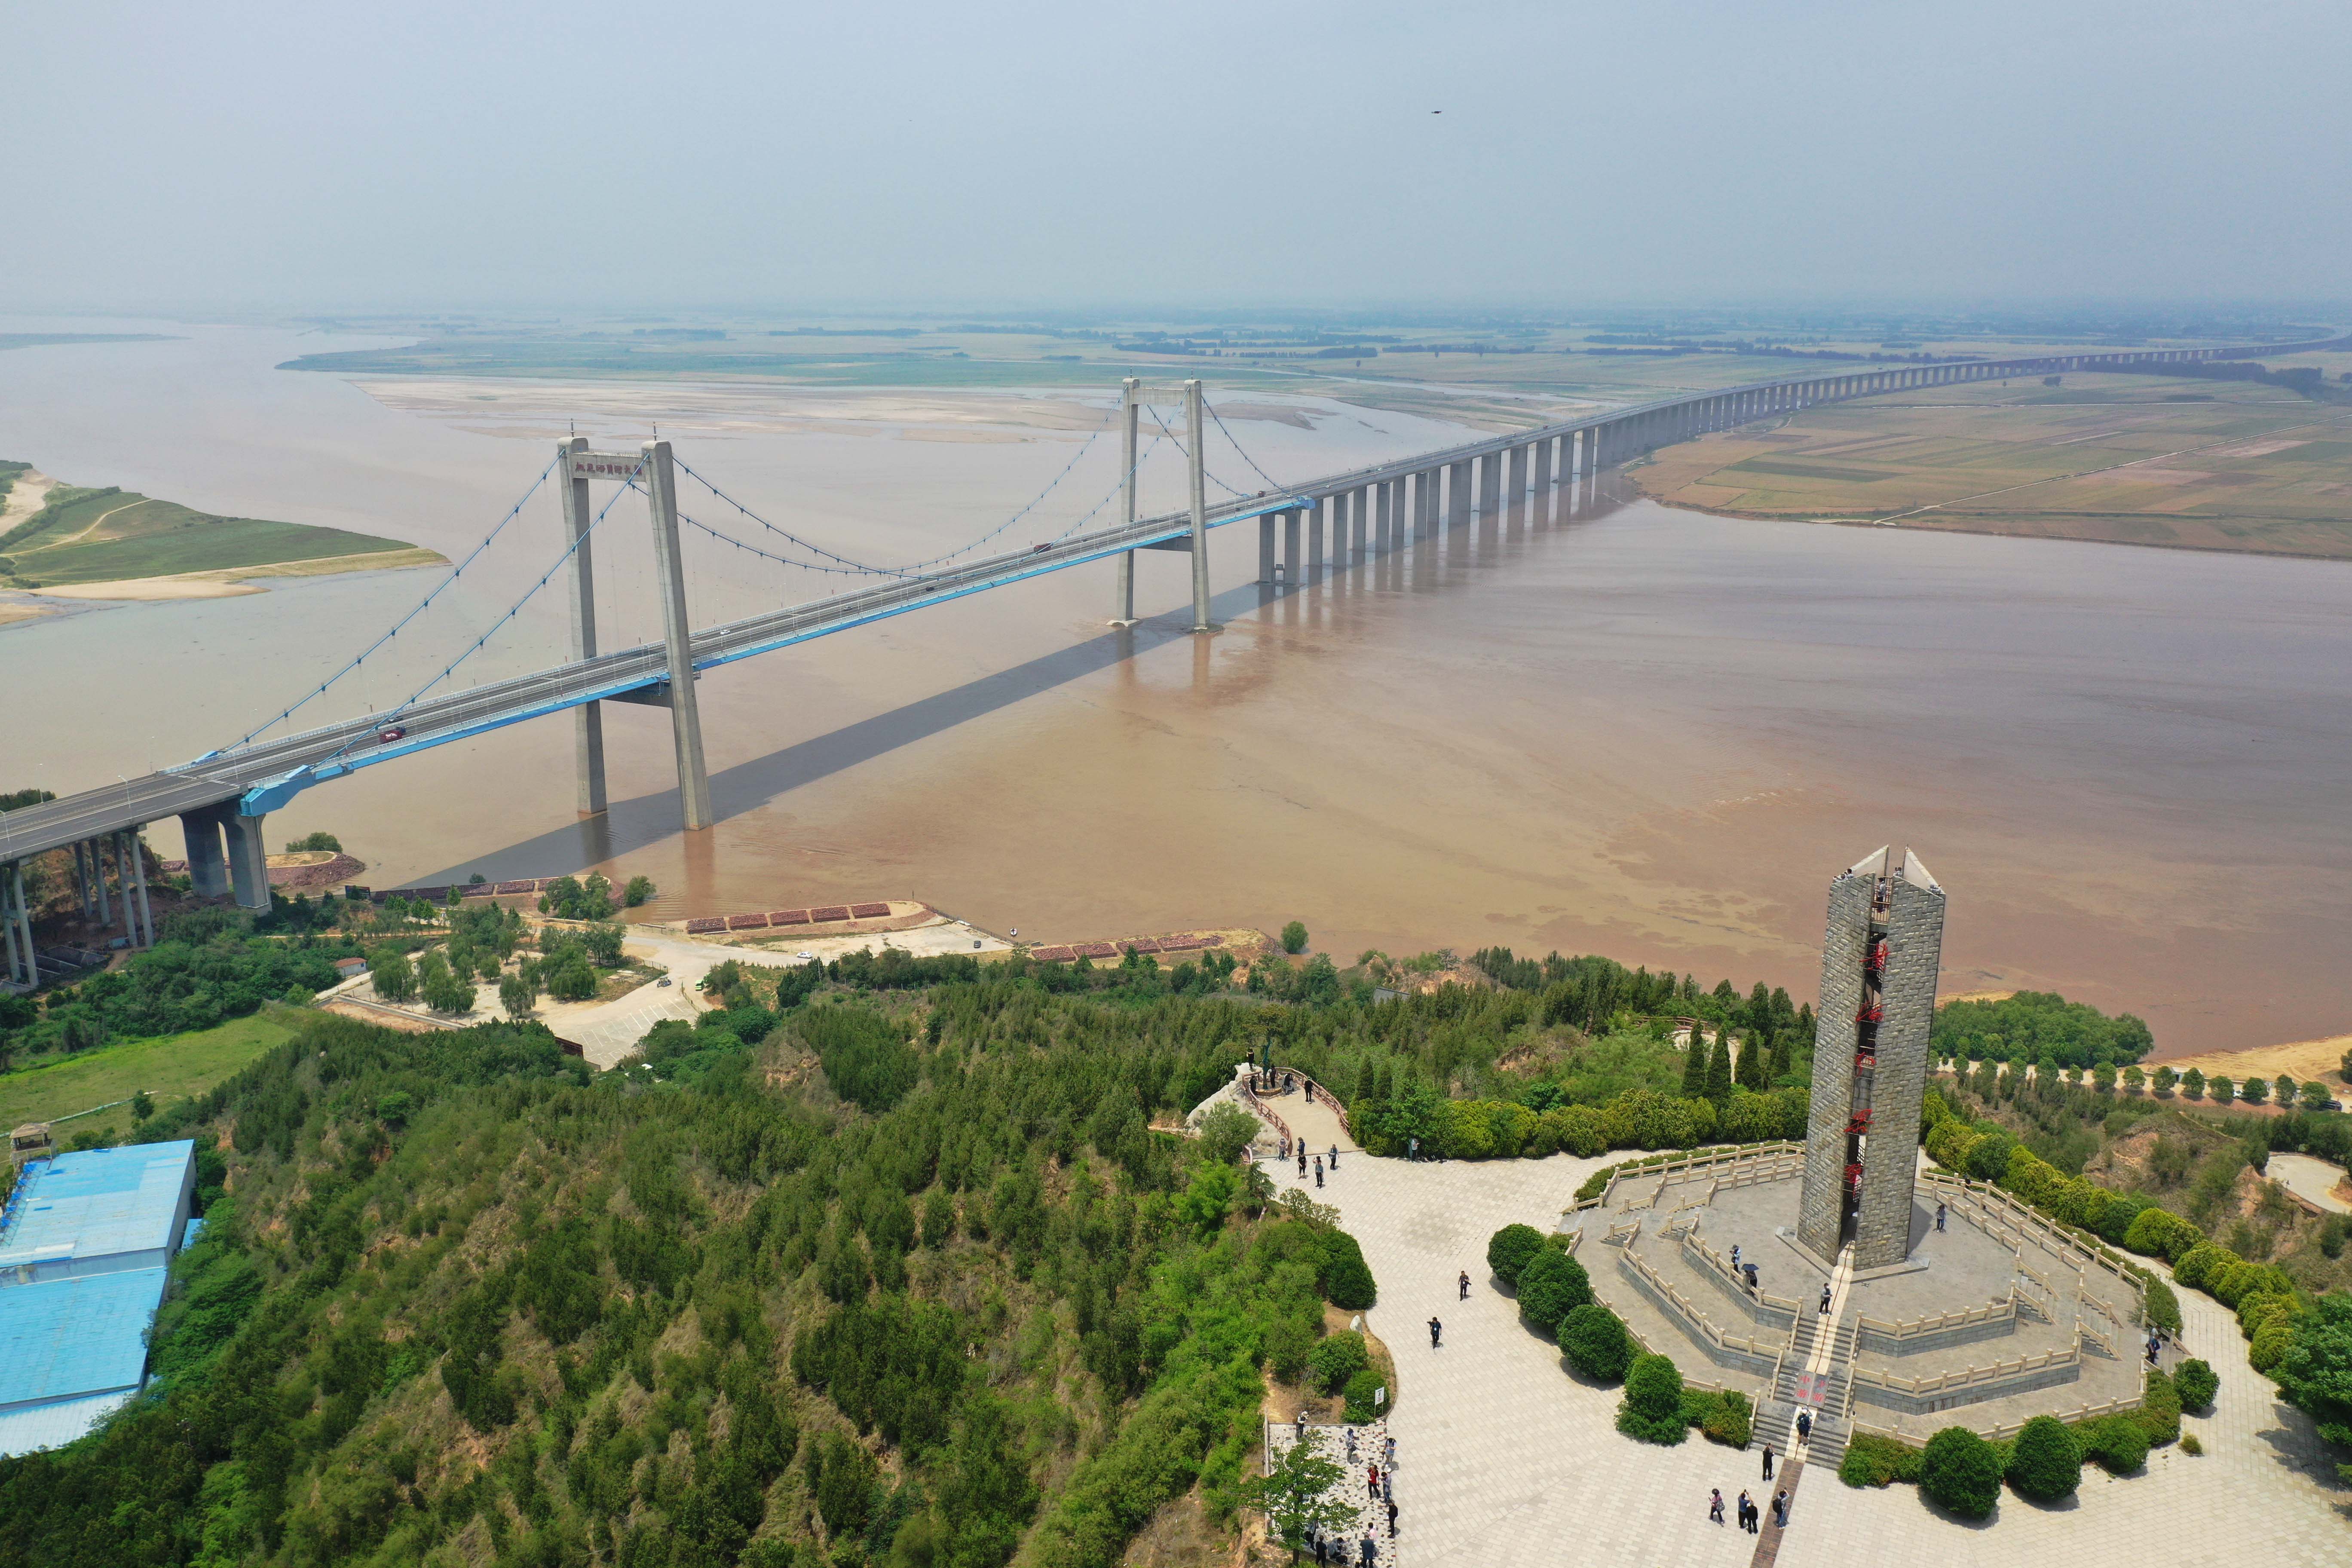 郑州官渡黄河大桥图片